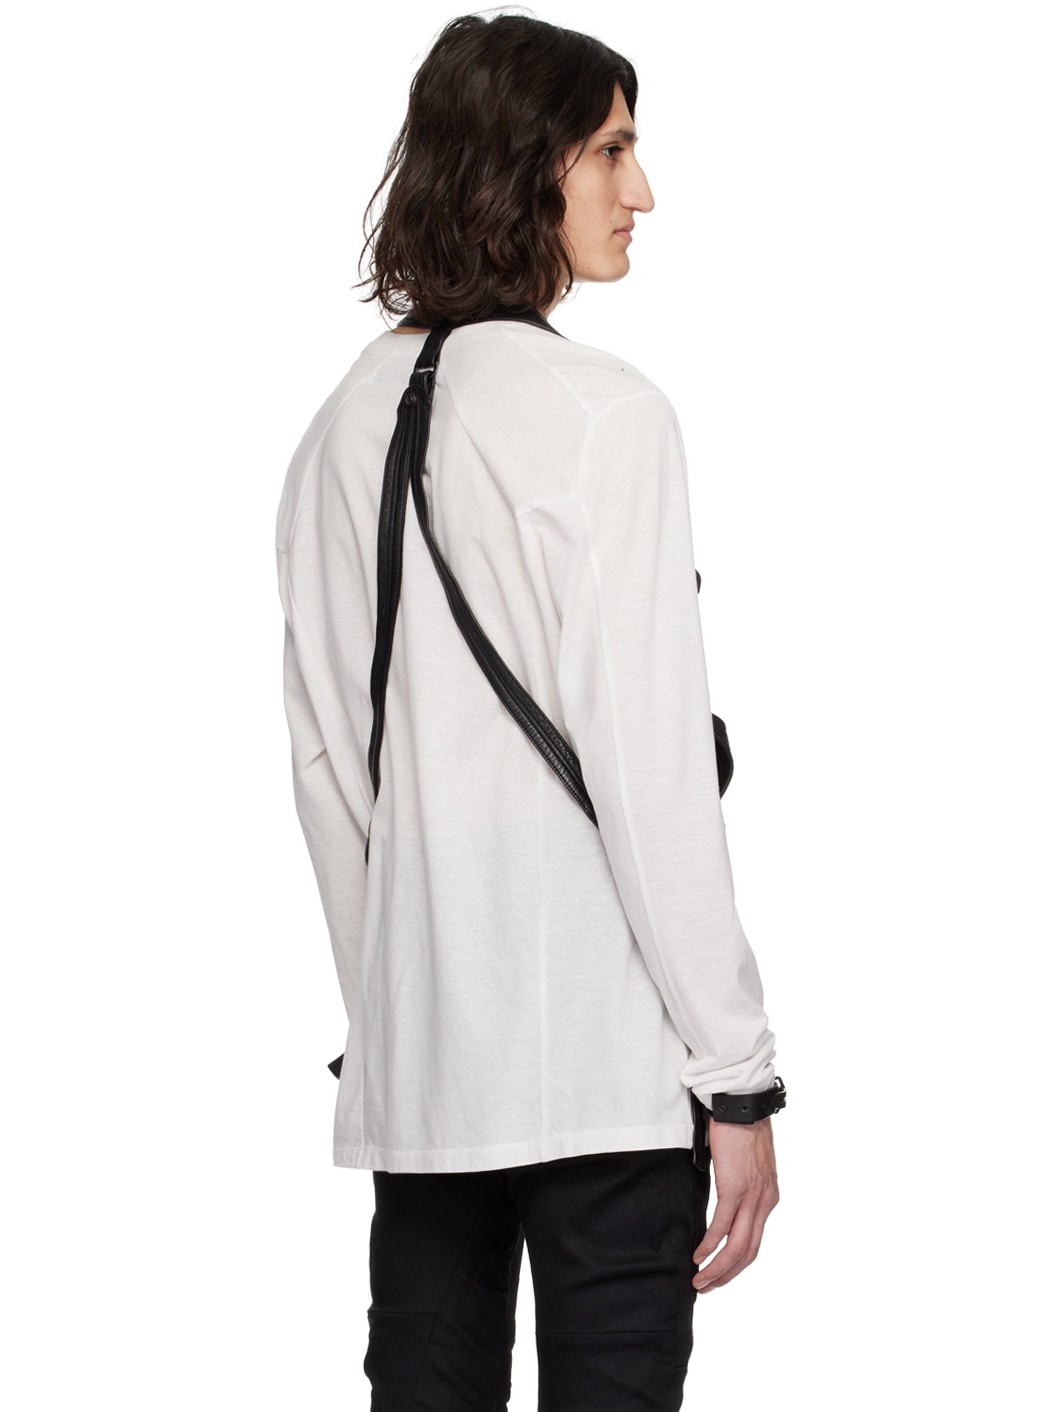 Black Bellows Pocket Leather Vest - 3